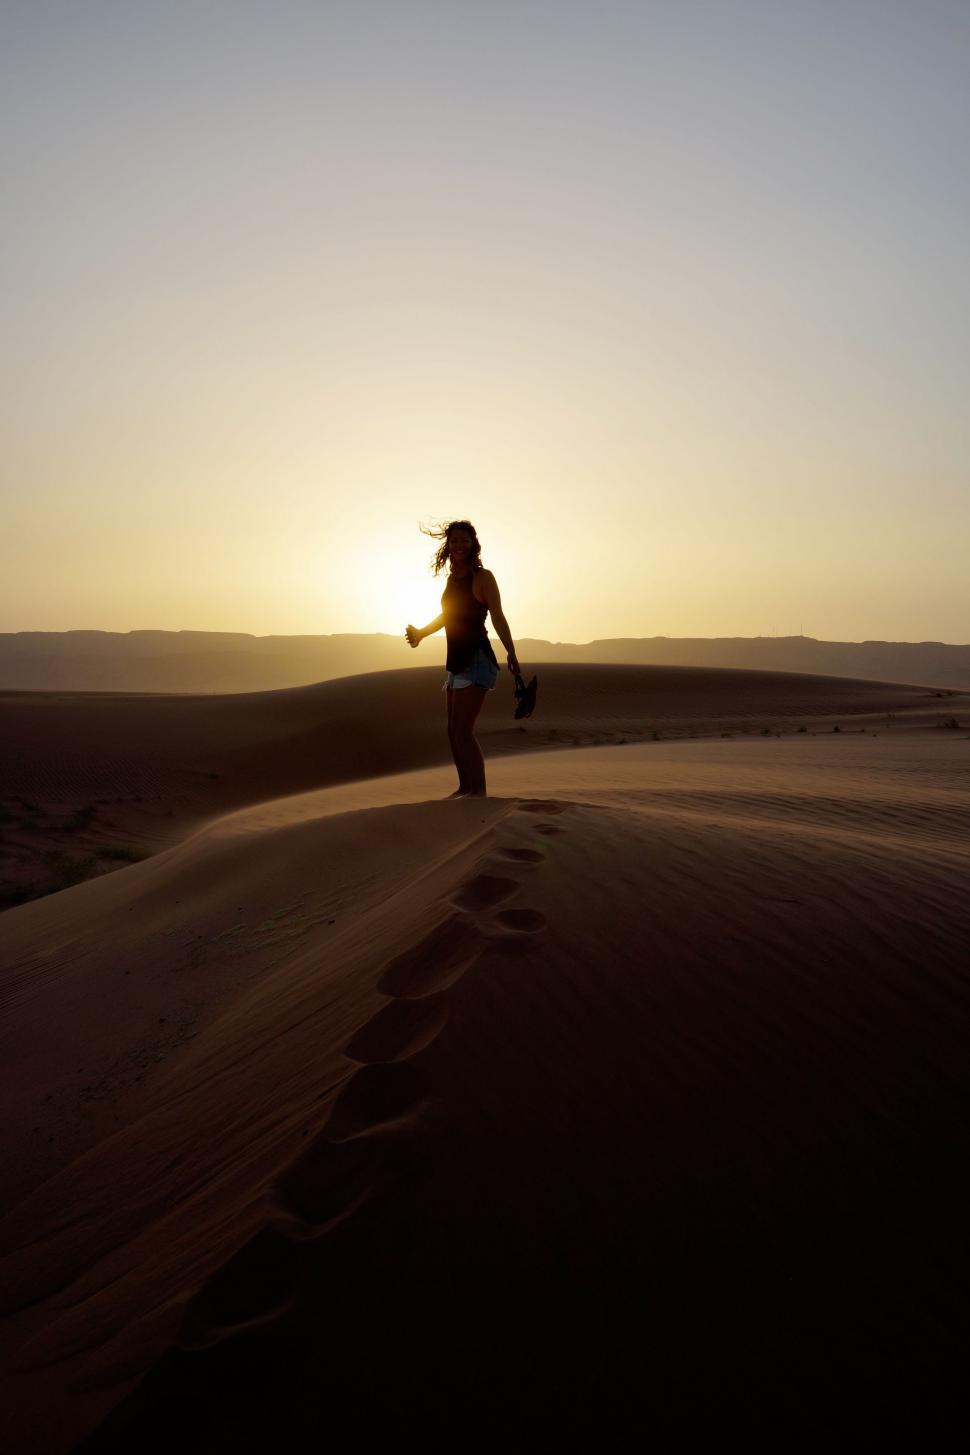 Free Image of Woman Walking Across Desert at Sunset 